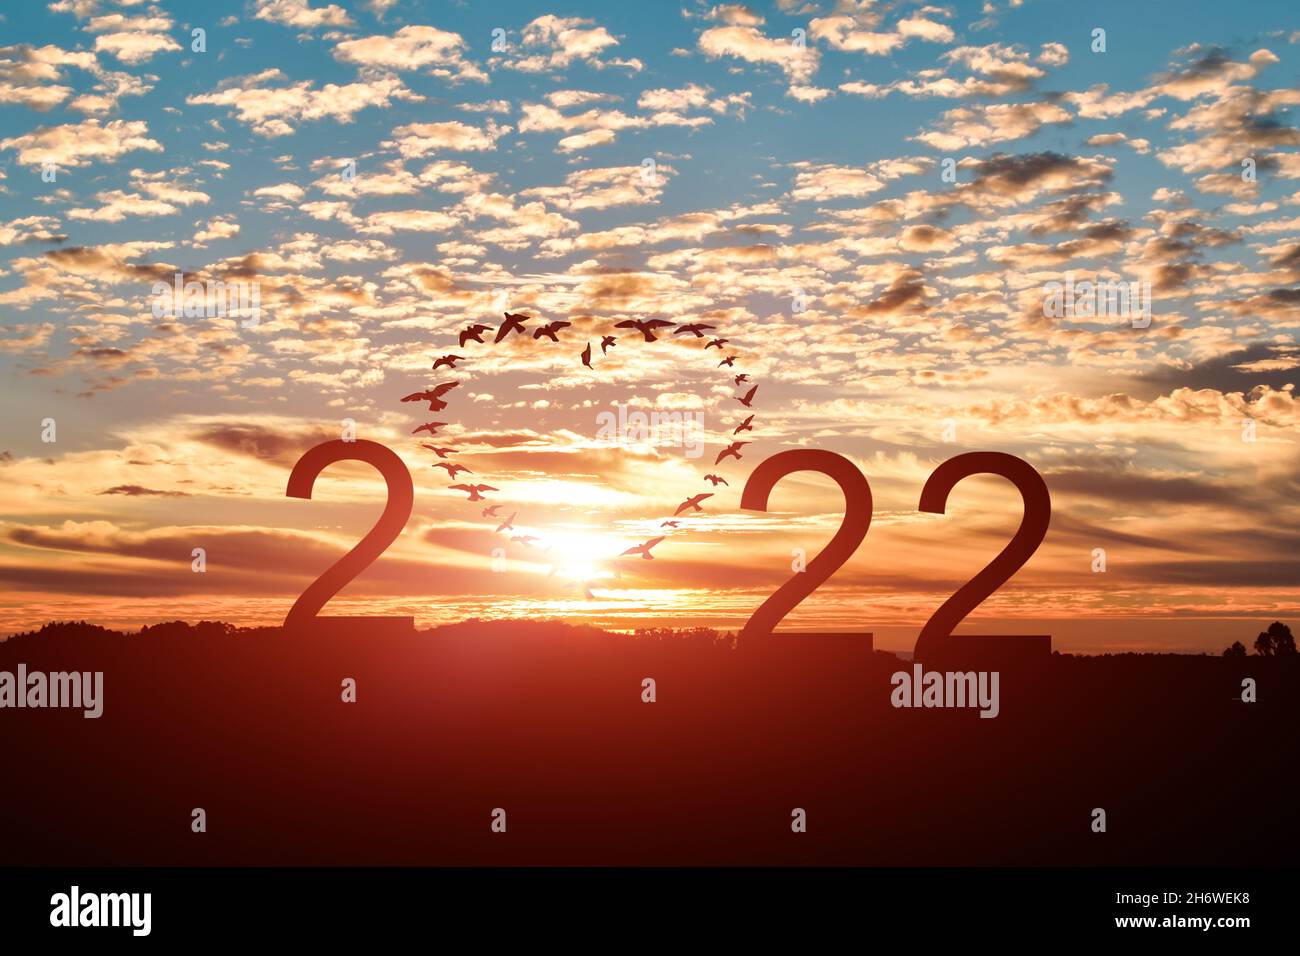 Konzept des neuen Jahres 2022. Silhouette von fliegenden Scharen Vögel in Form Herz mit 2022 vor blauem Himmel Hintergrund. Stockfoto